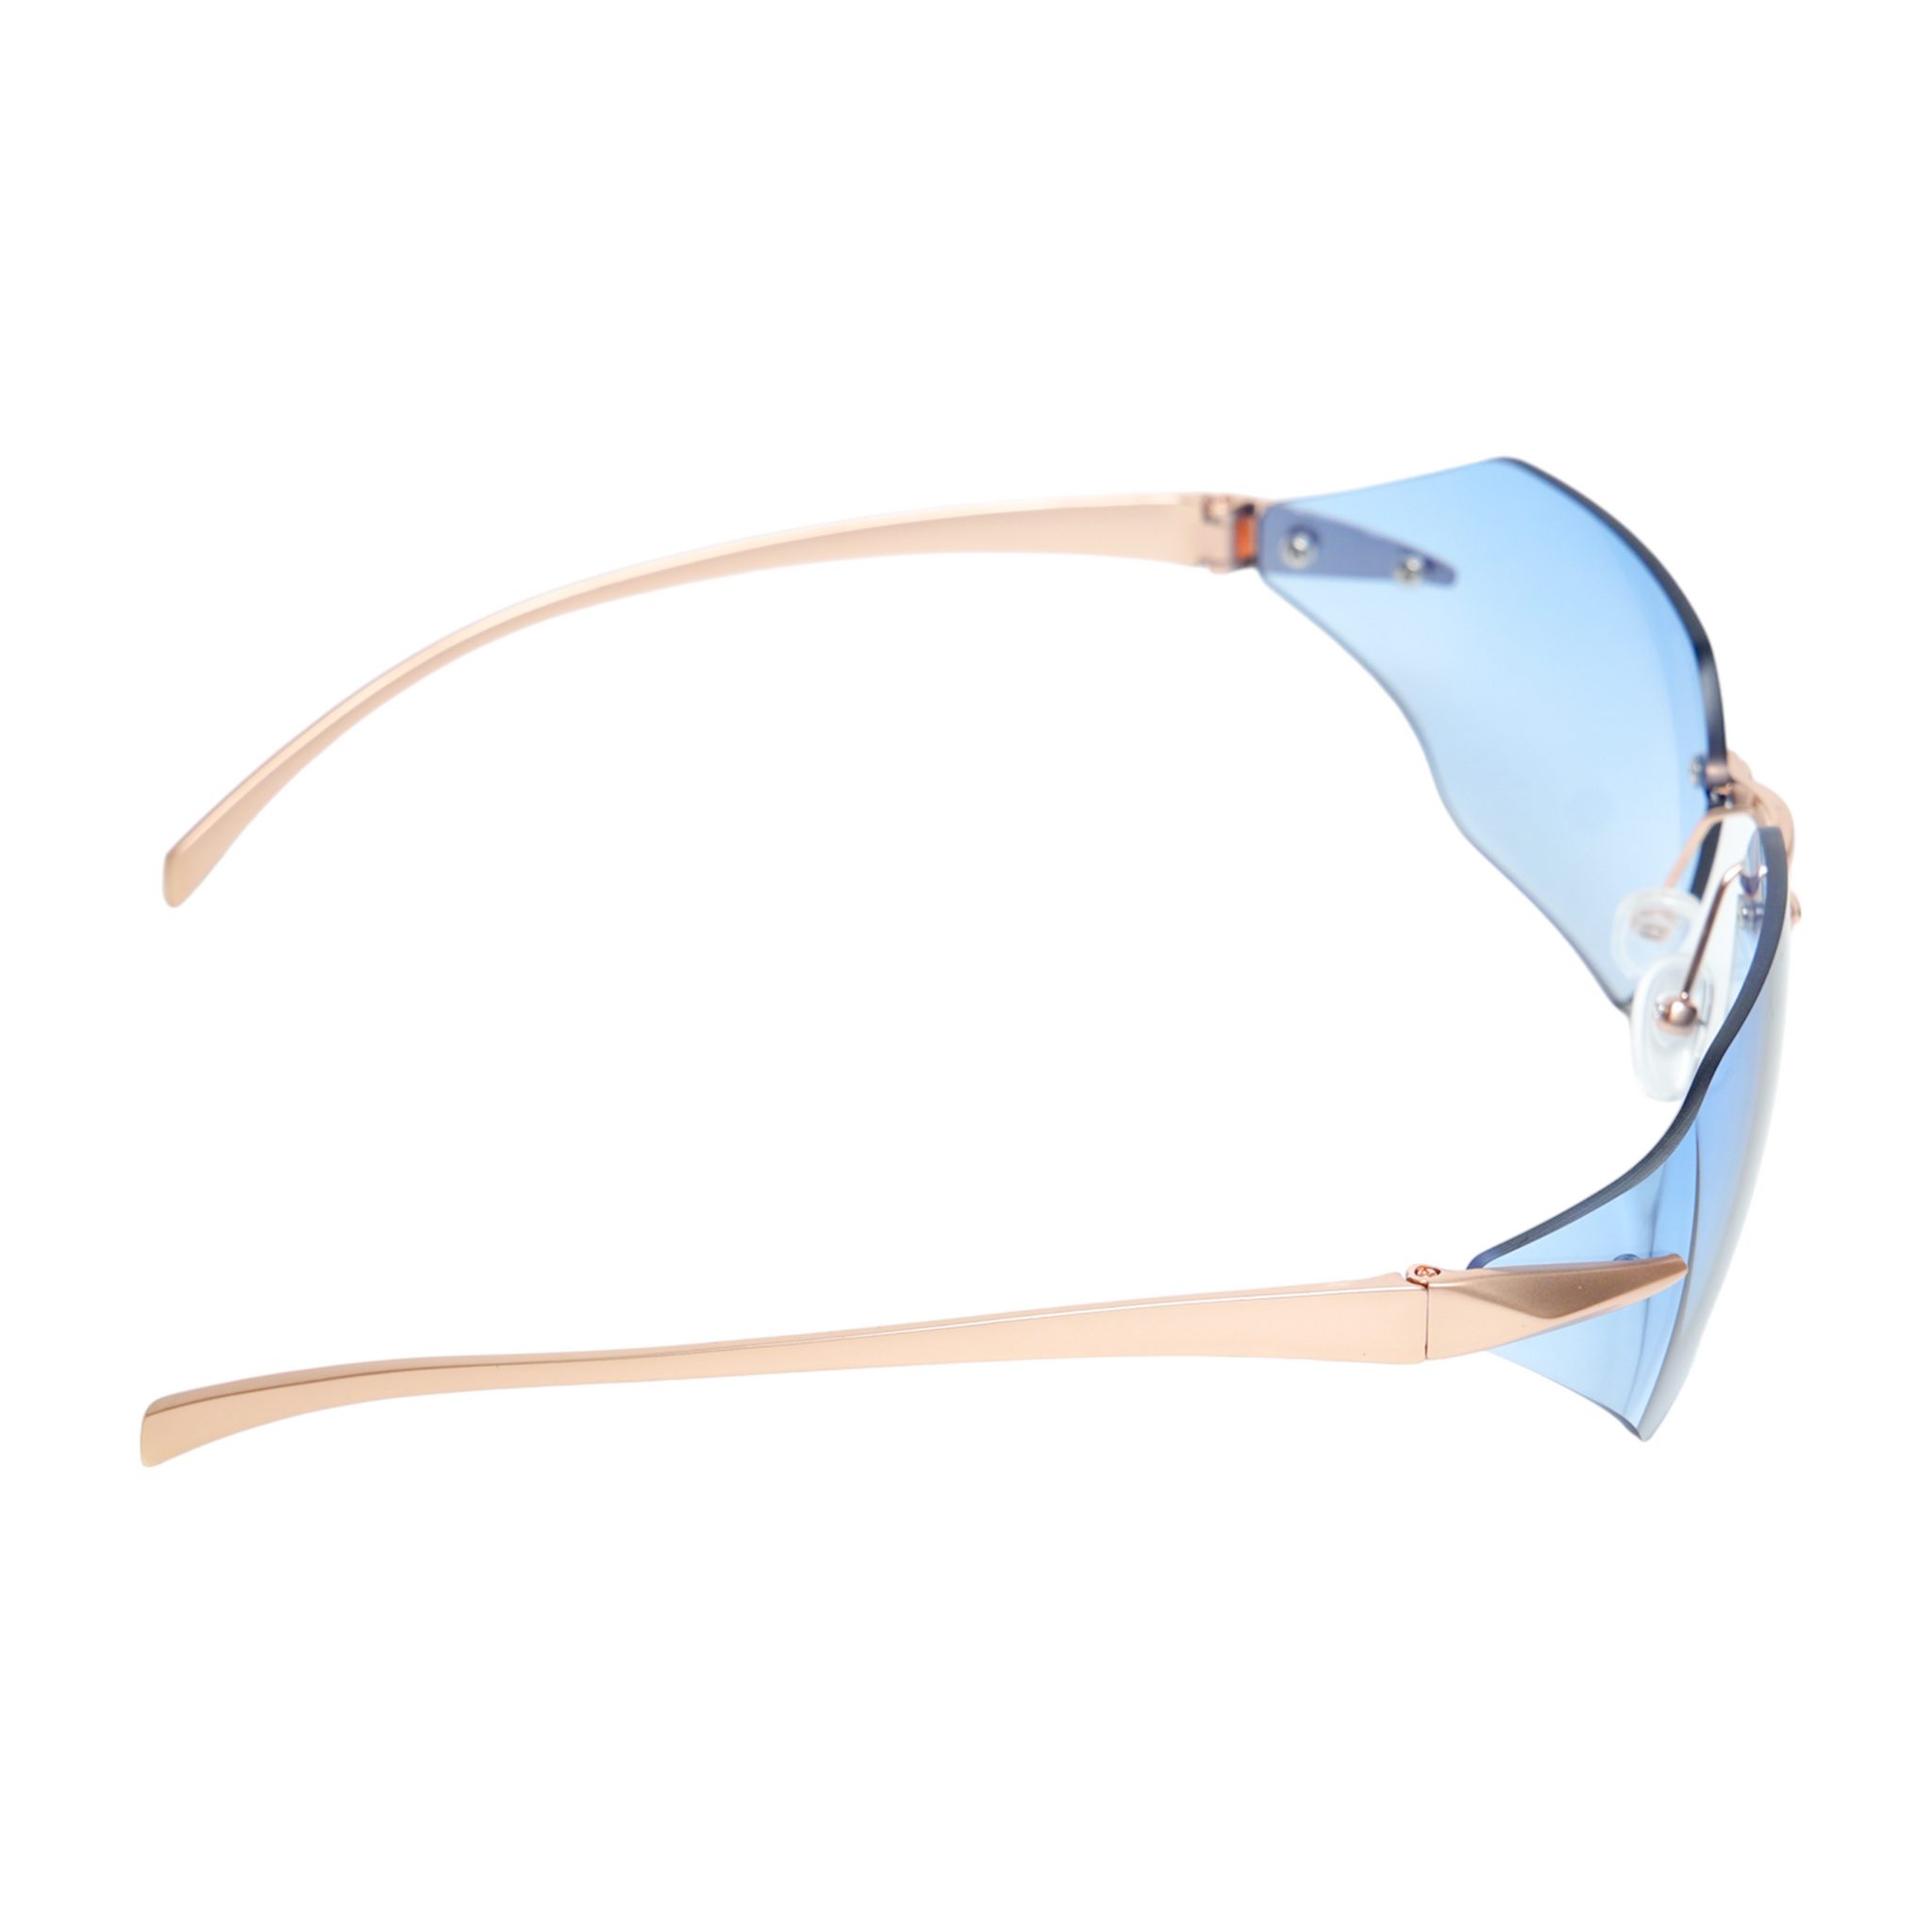 Chokore Rimless Wrap-around Sunglasses (Blue)